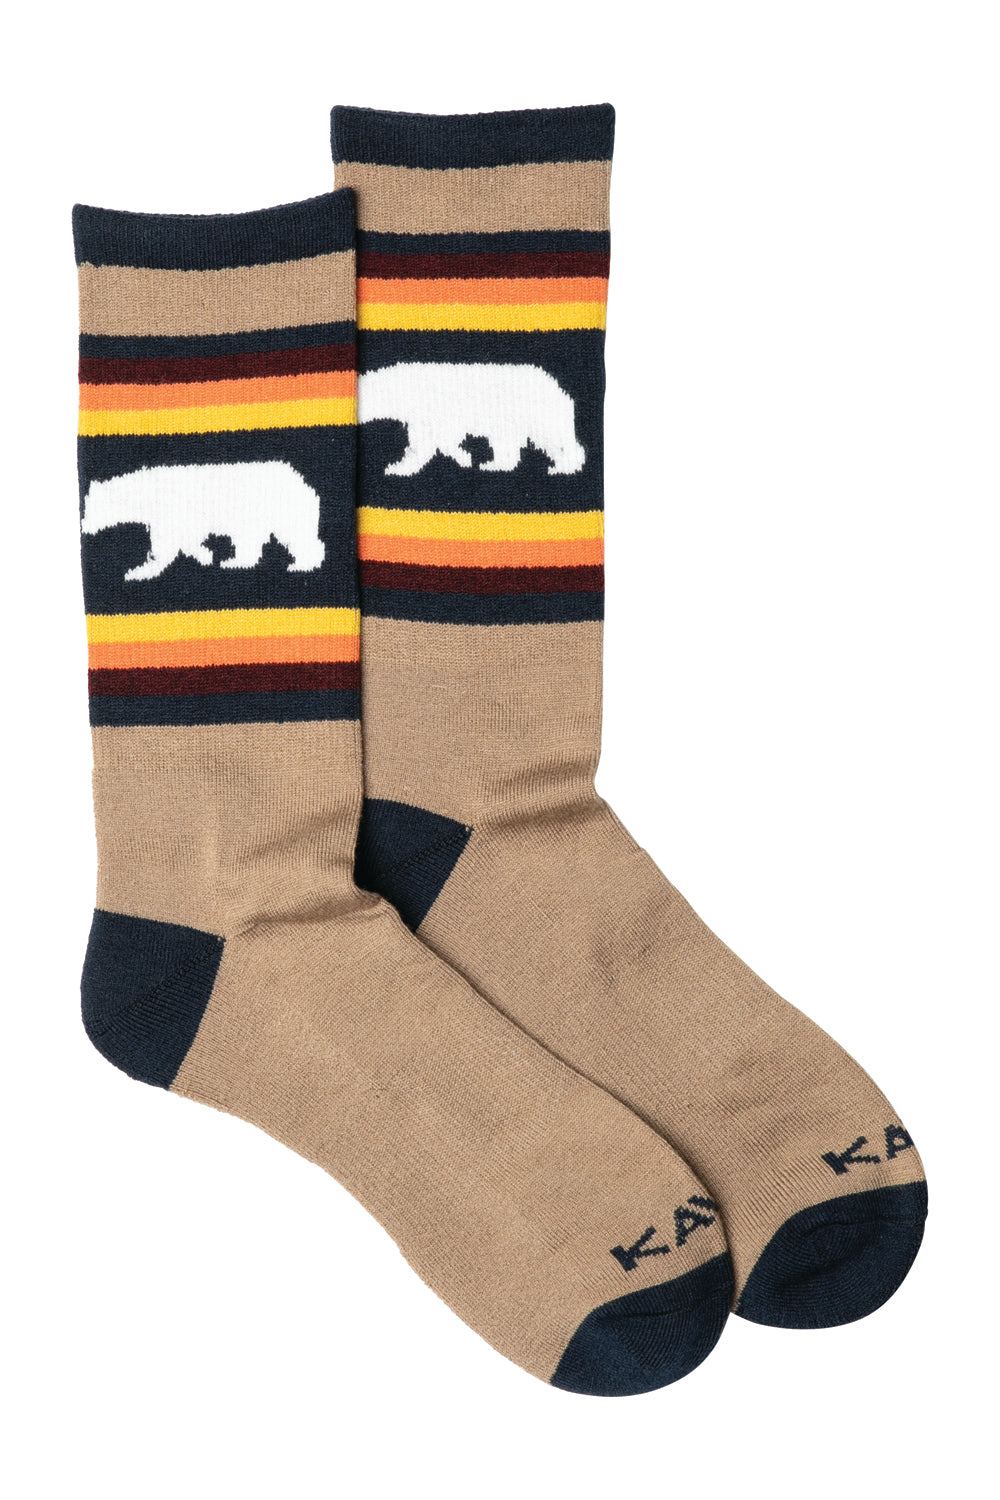 Kavu Moonwalk Socks